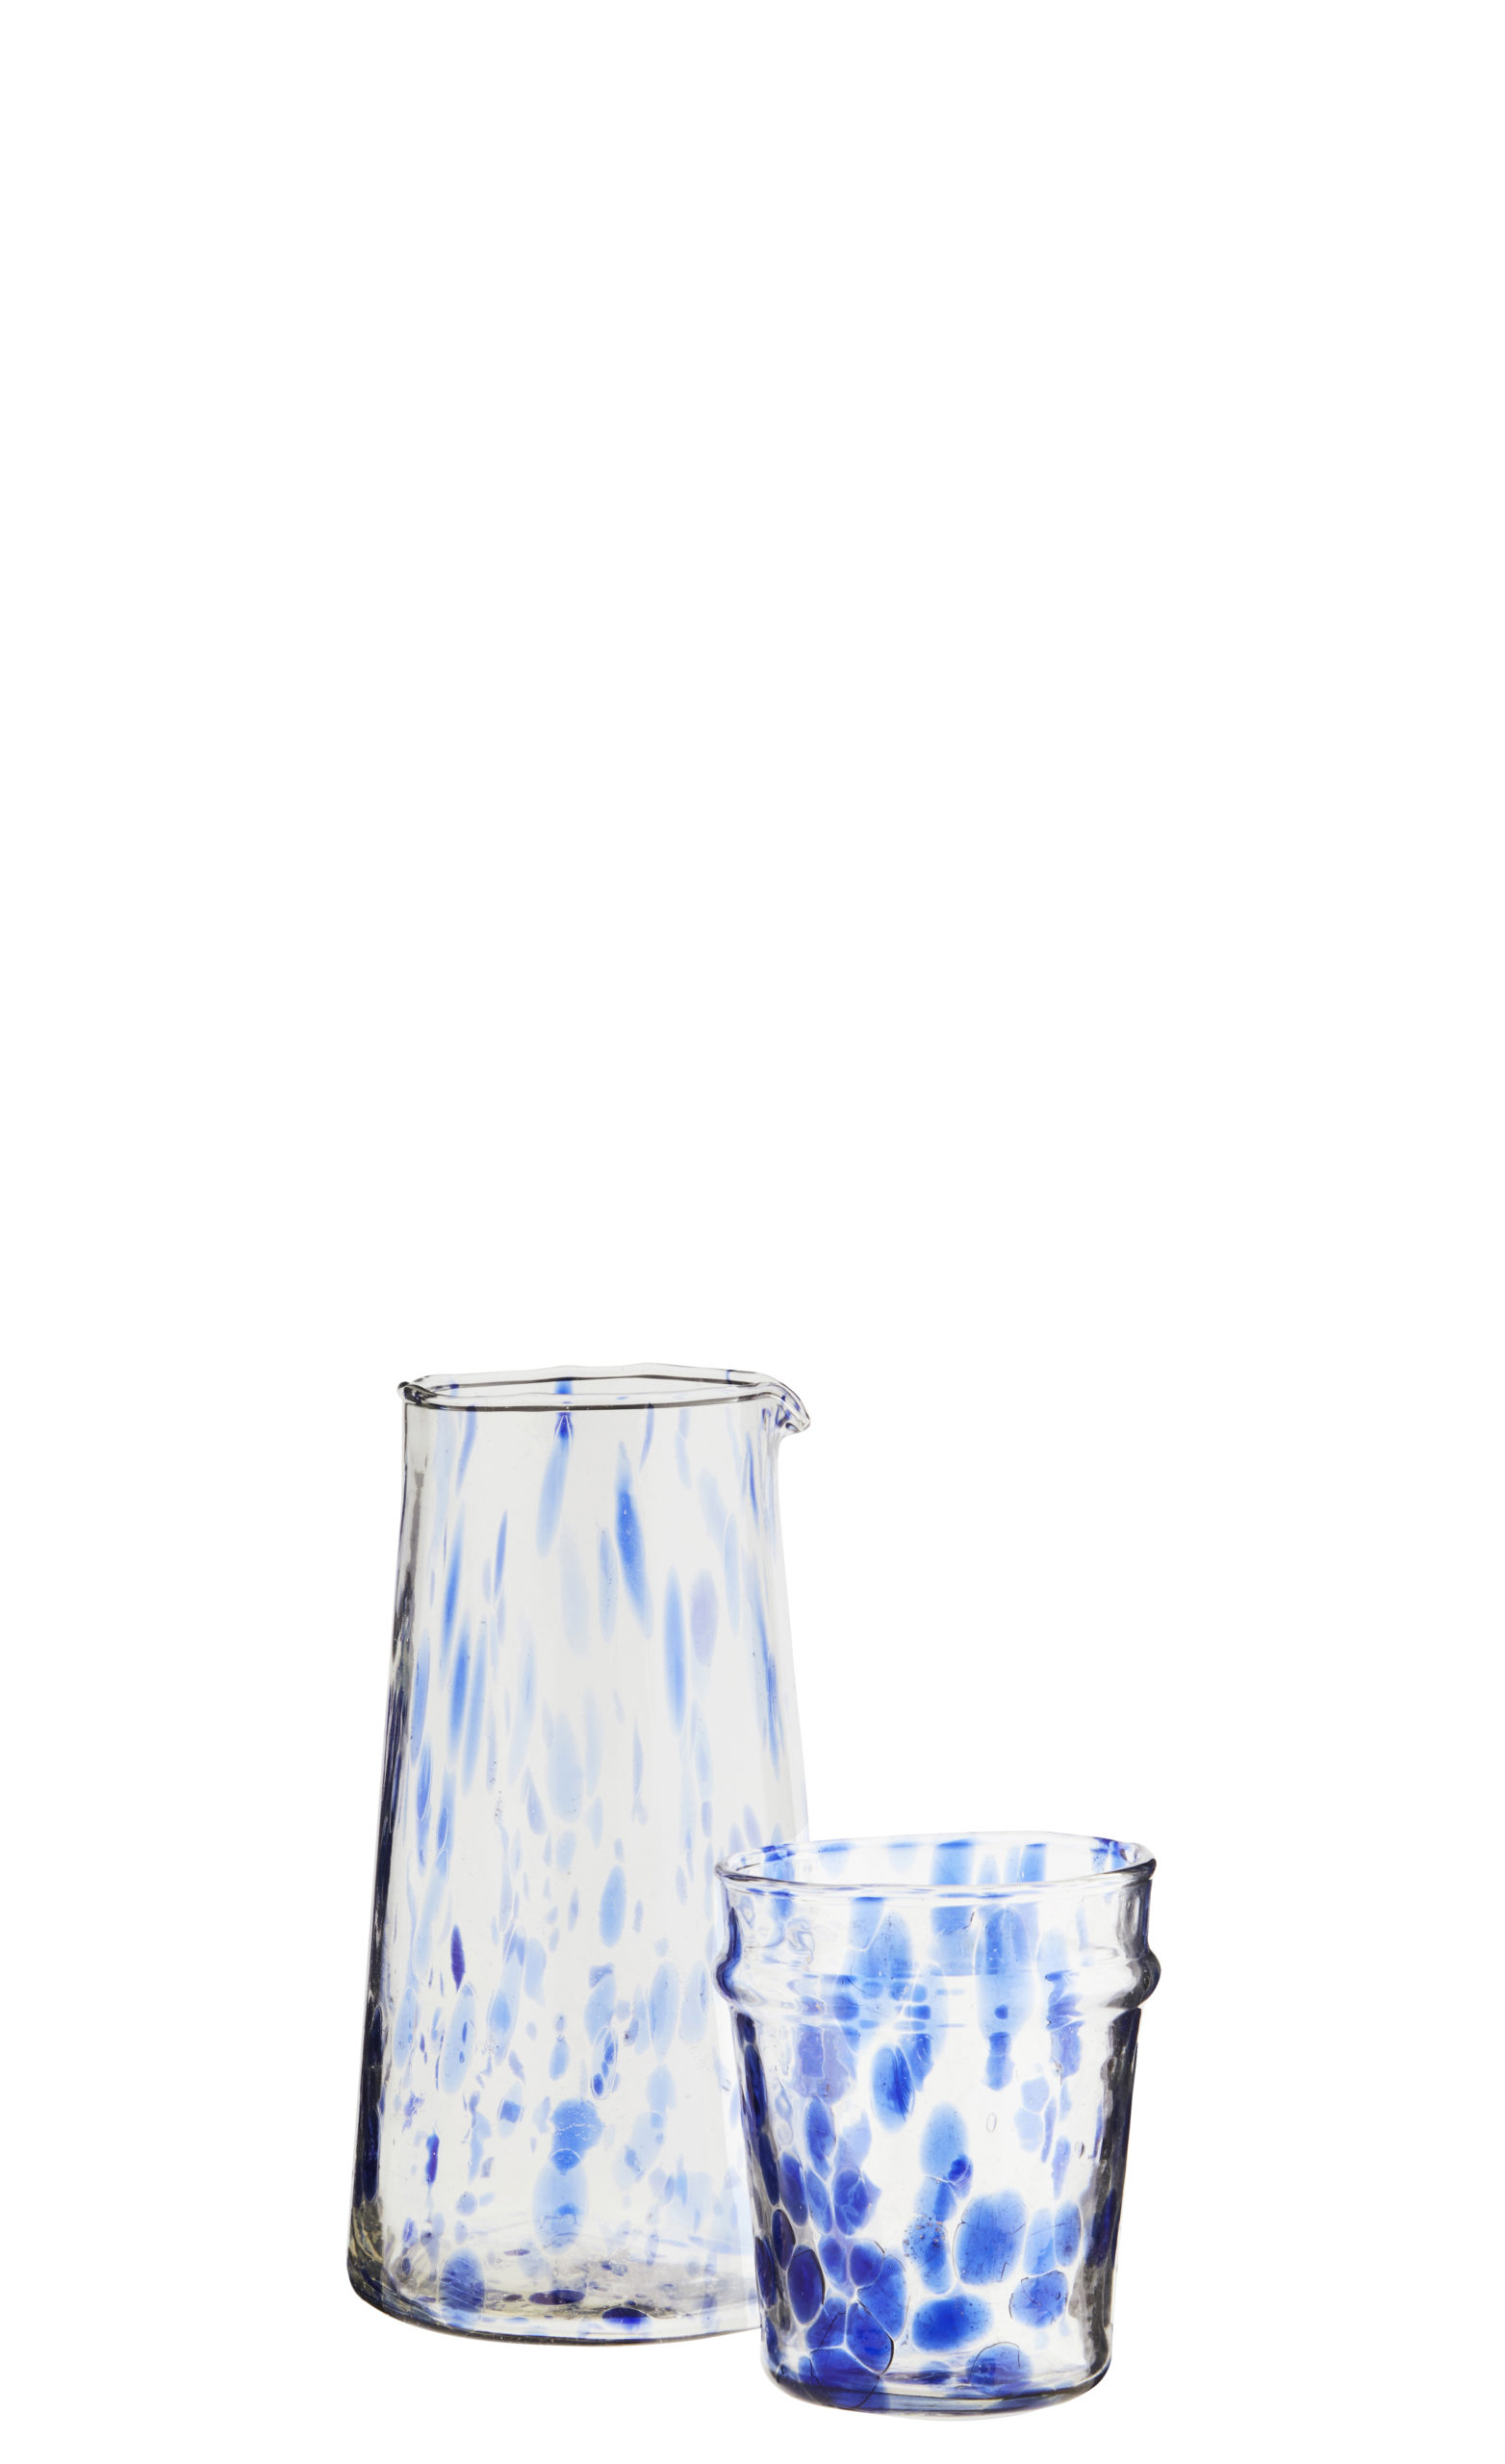 Cruche - carafe en verre recyclé moucheté bleu * Madam Stoltz